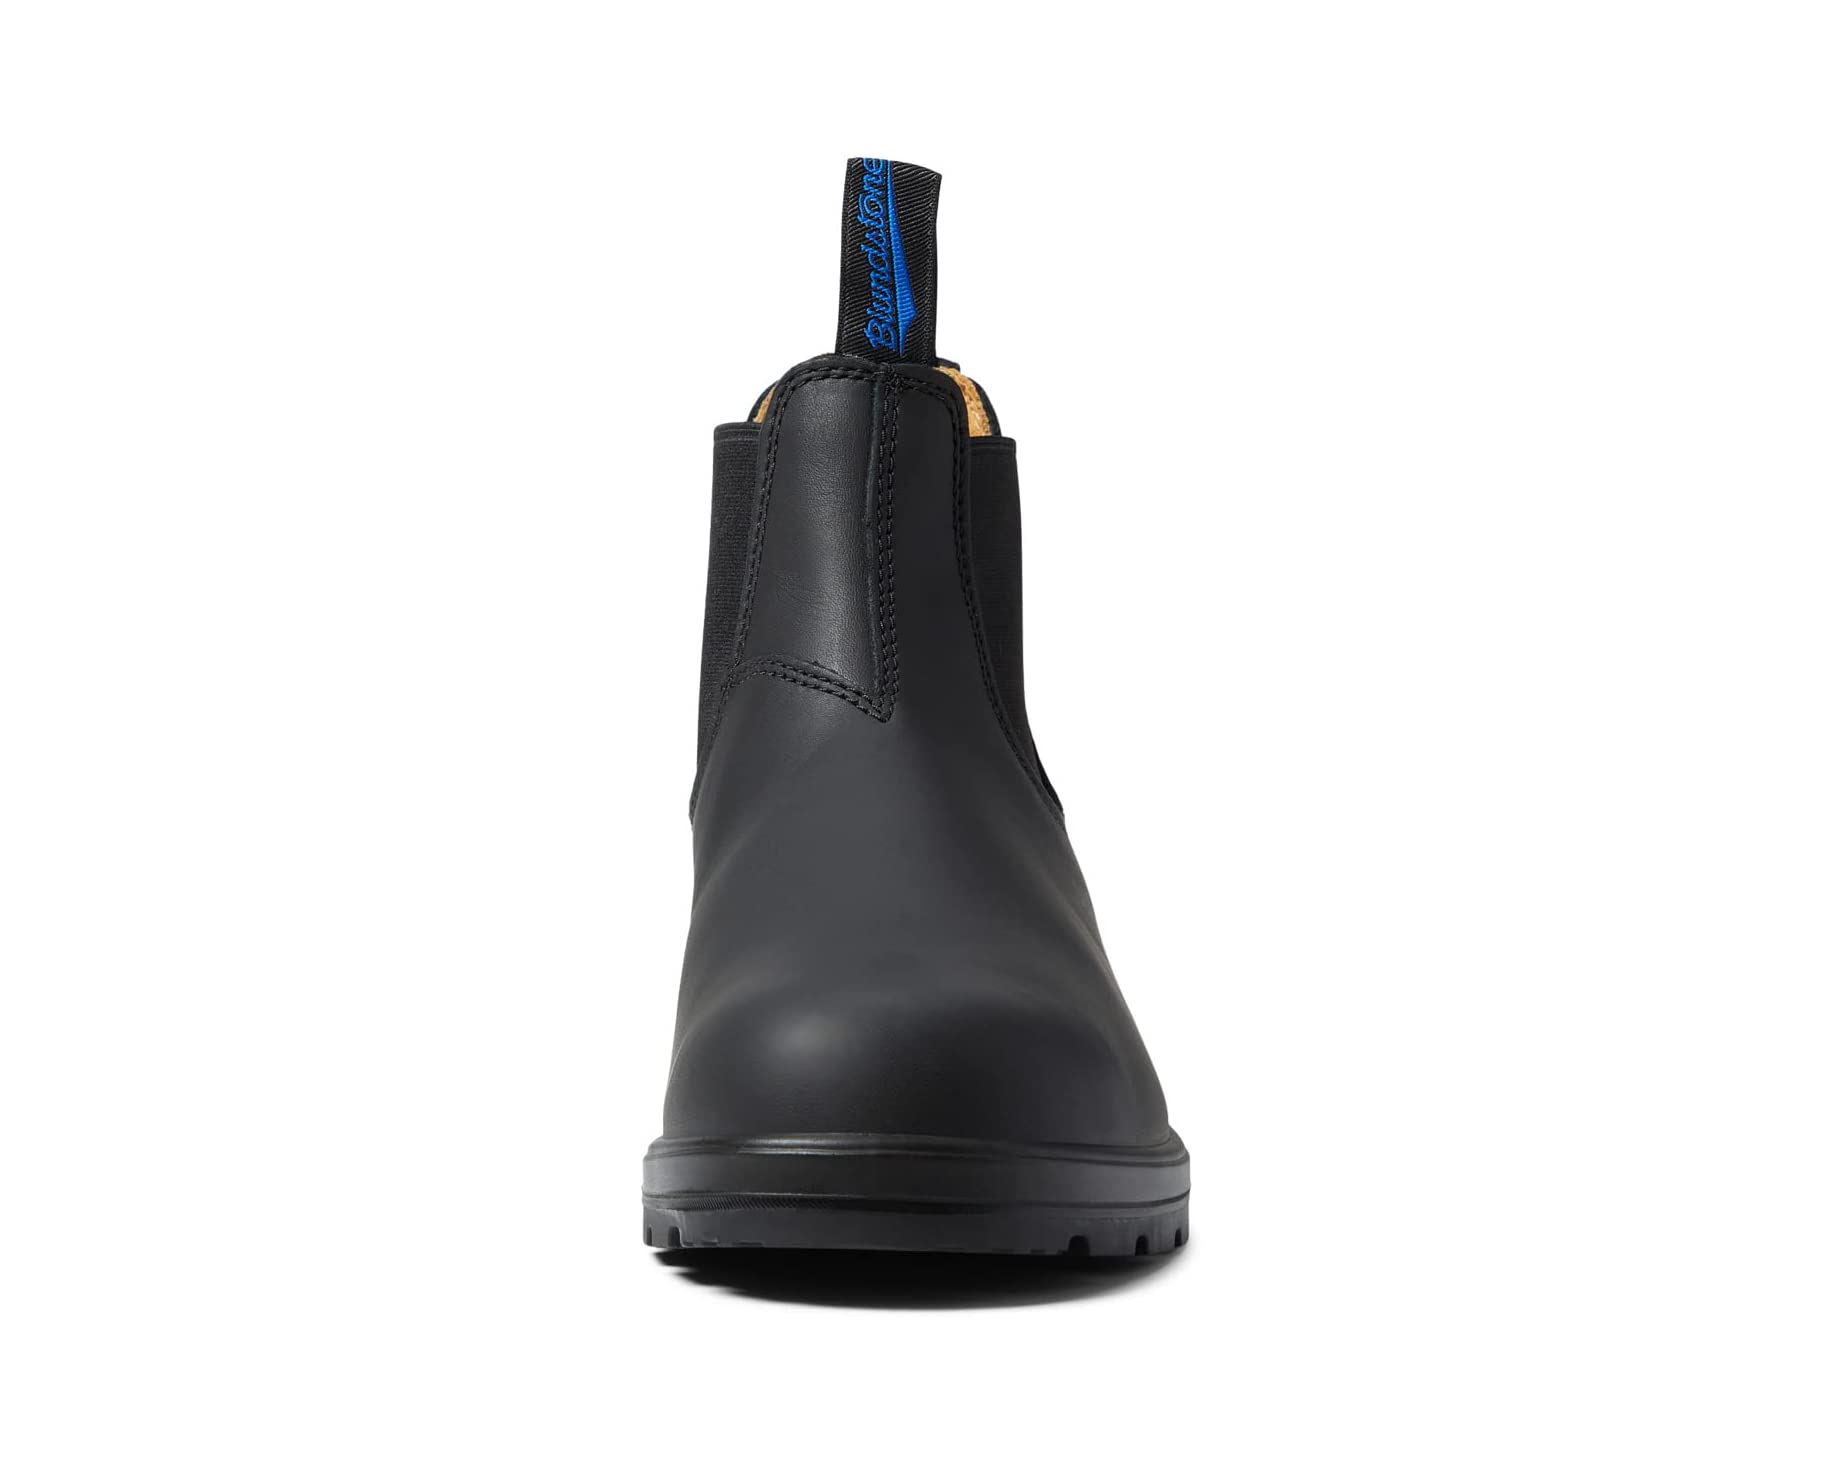 Ботинки BL566 Waterproof Winter Chelsea Boot Blundstone, черный ботинки zara kids studded chelsea черный